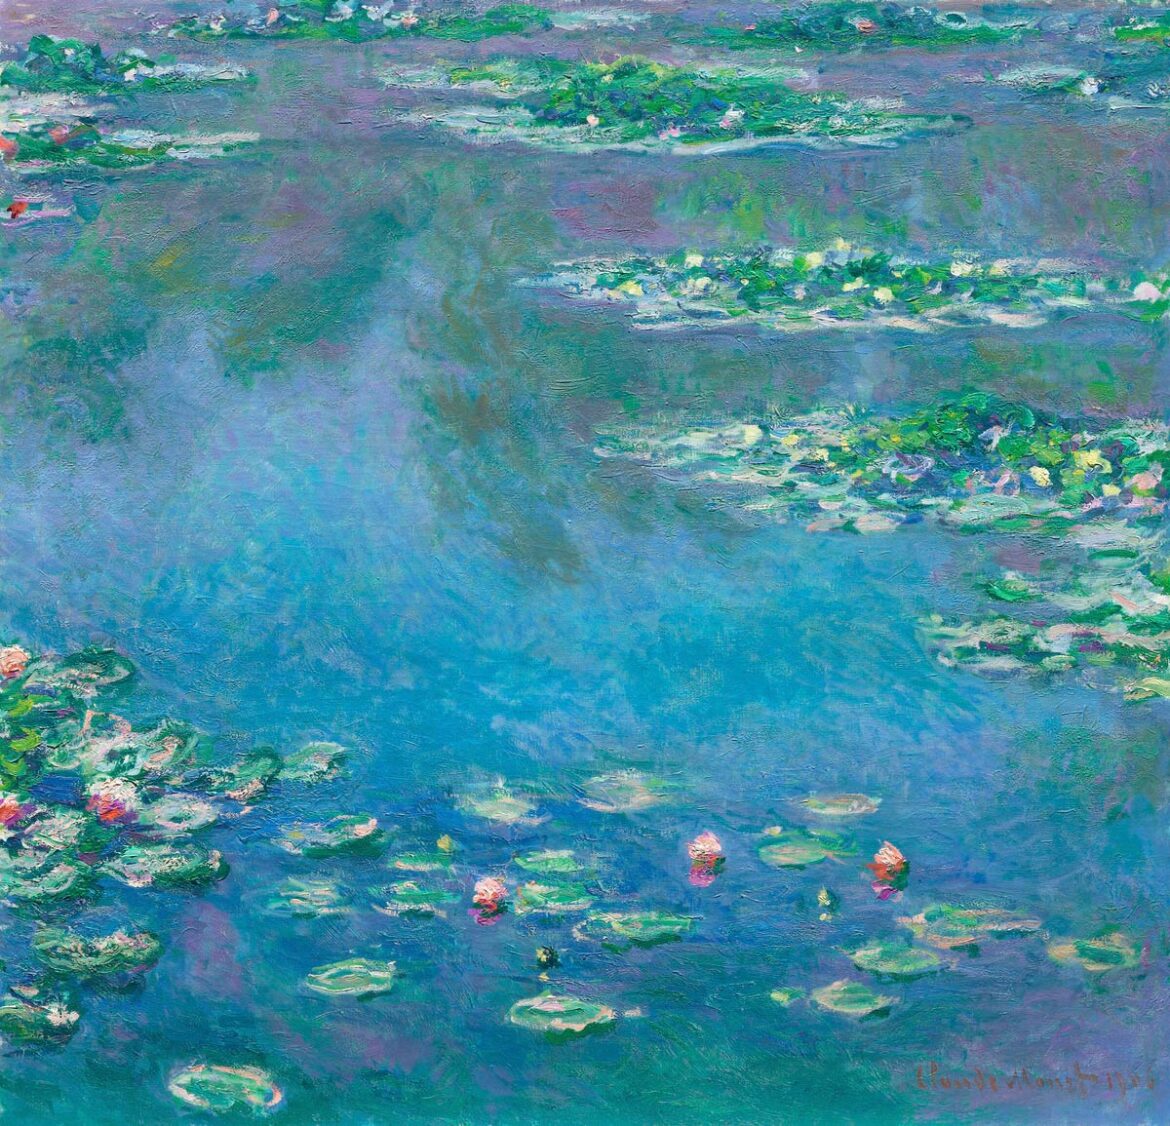 【無料壁紙】クロード・モネ「睡蓮 (1906)」 / Claude Monet_Water Lilies (1906)